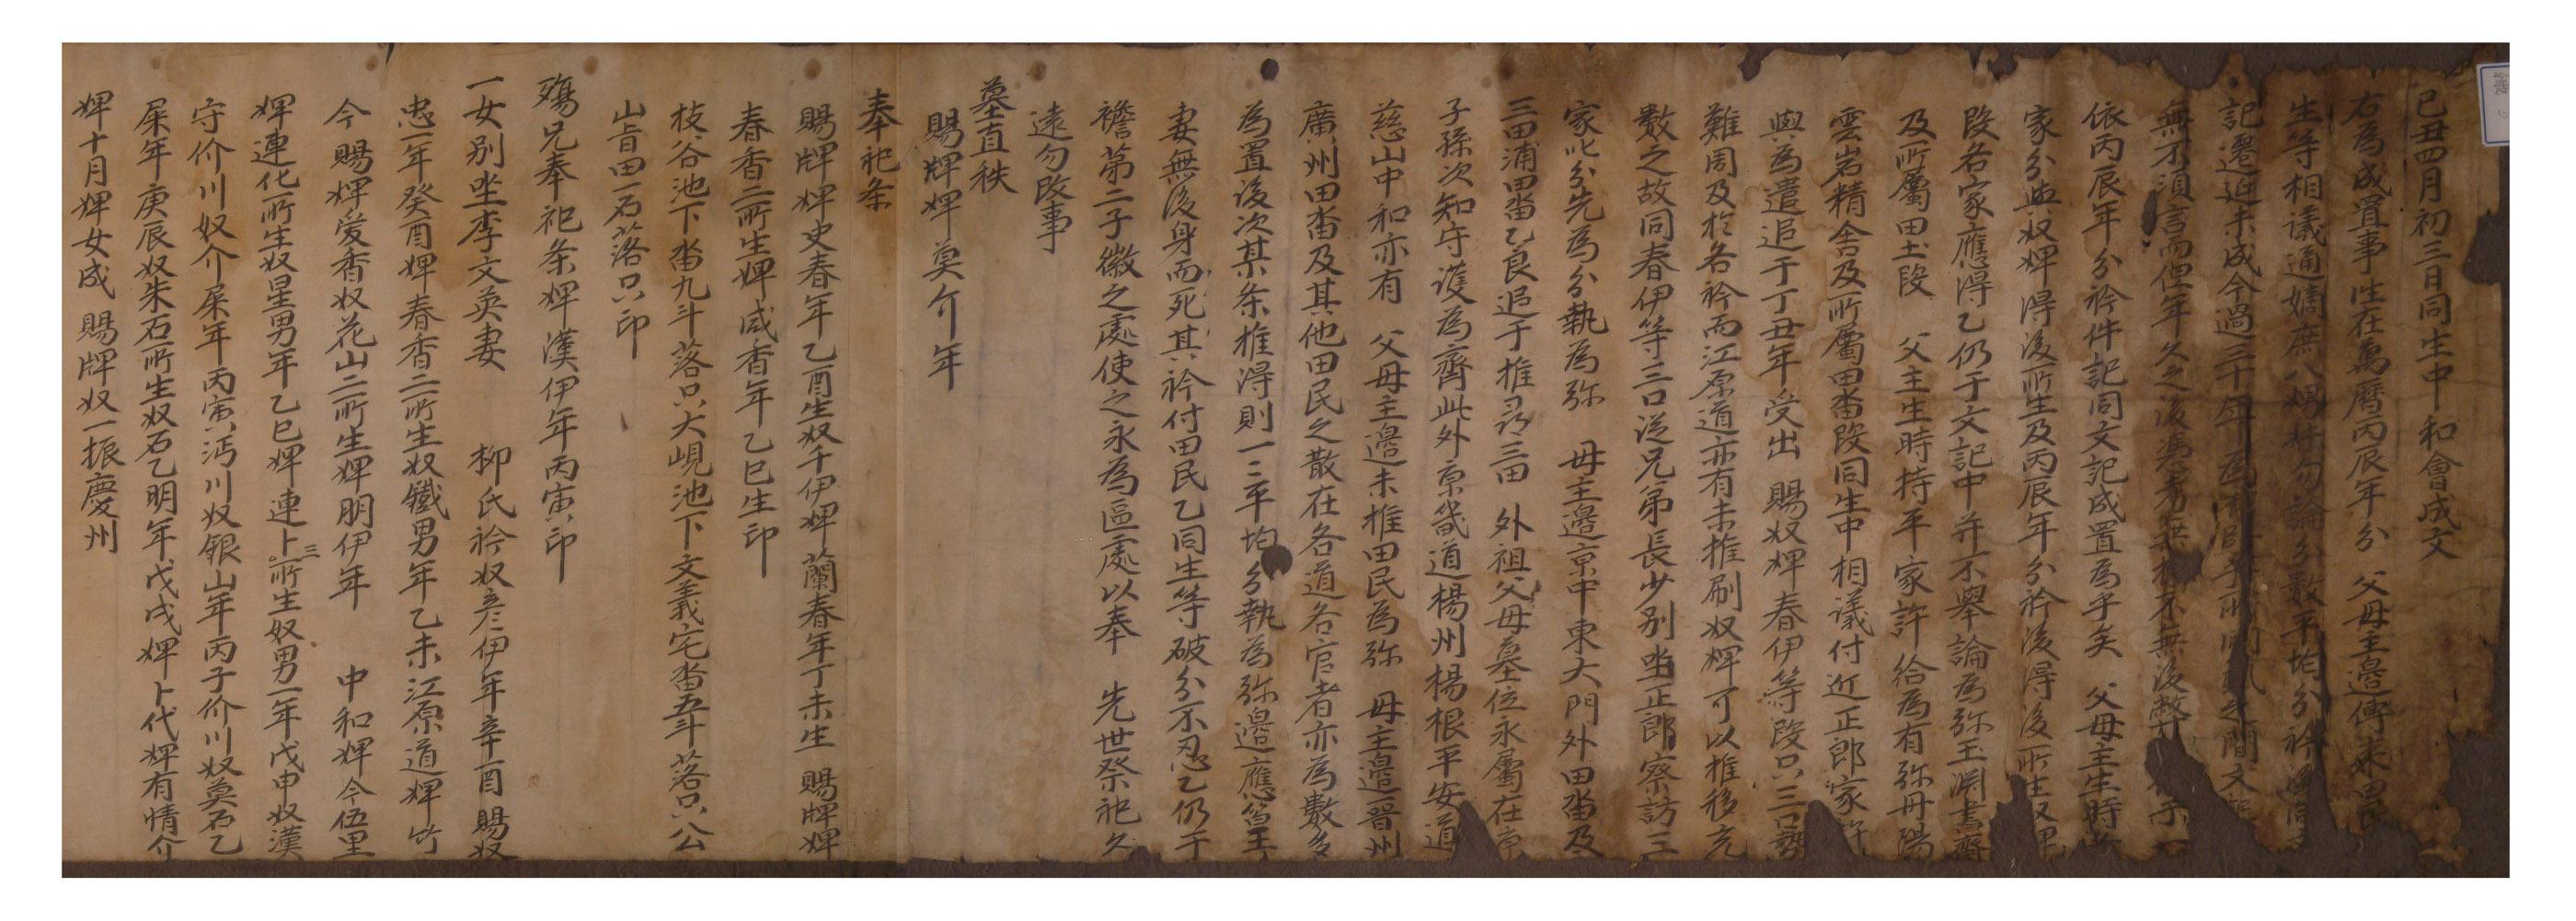 1449년에 유성룡의 자식 8남매가 부모의 재산을 상속하면서 작성한 화회문기